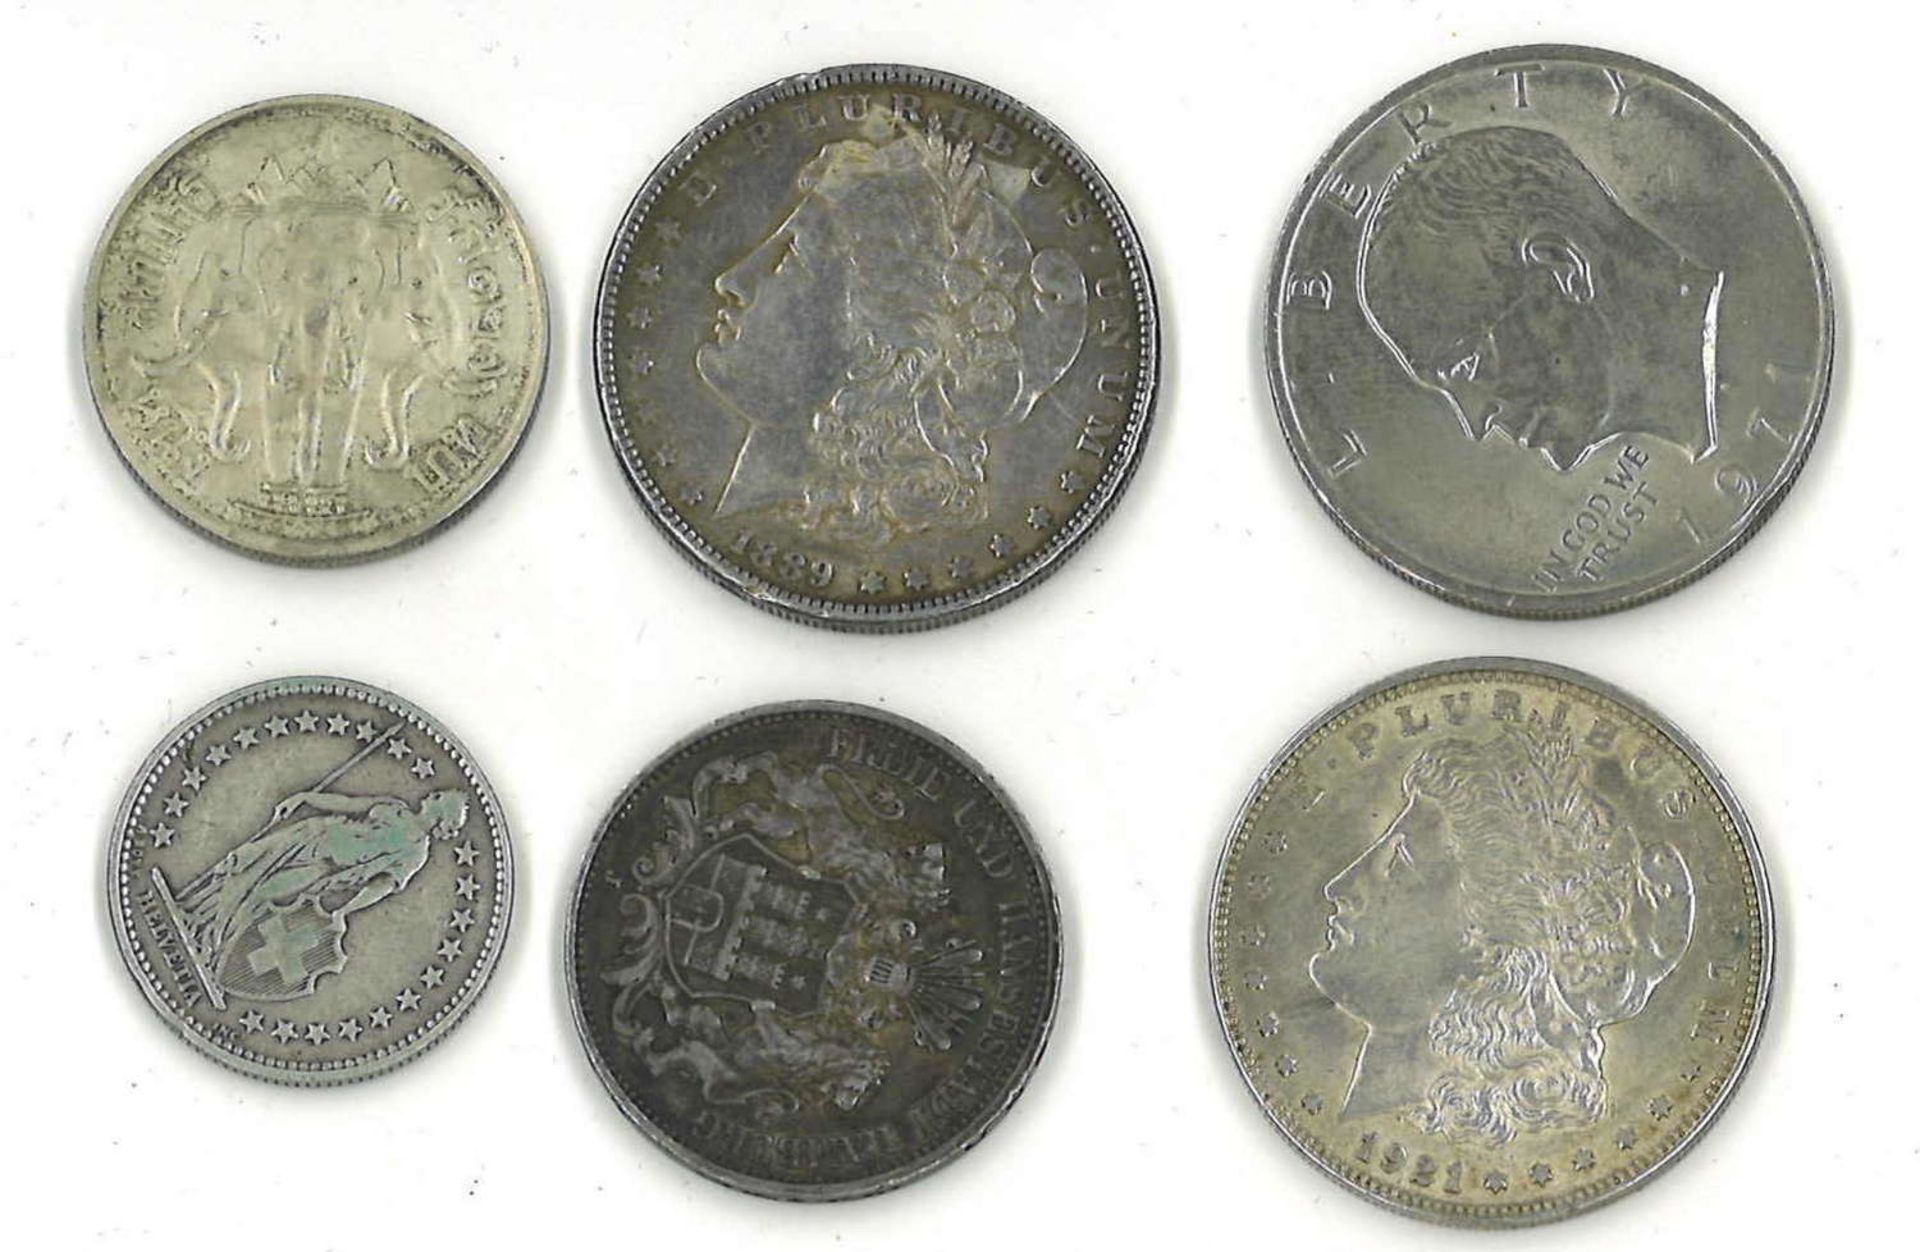 kleines Lot Münzen, dabei Silber, z.Bsp. 1 Dollar 1889, 1 Dollar 1921, 3 Mark Hamburg 1909, etc. - Bild 2 aus 2